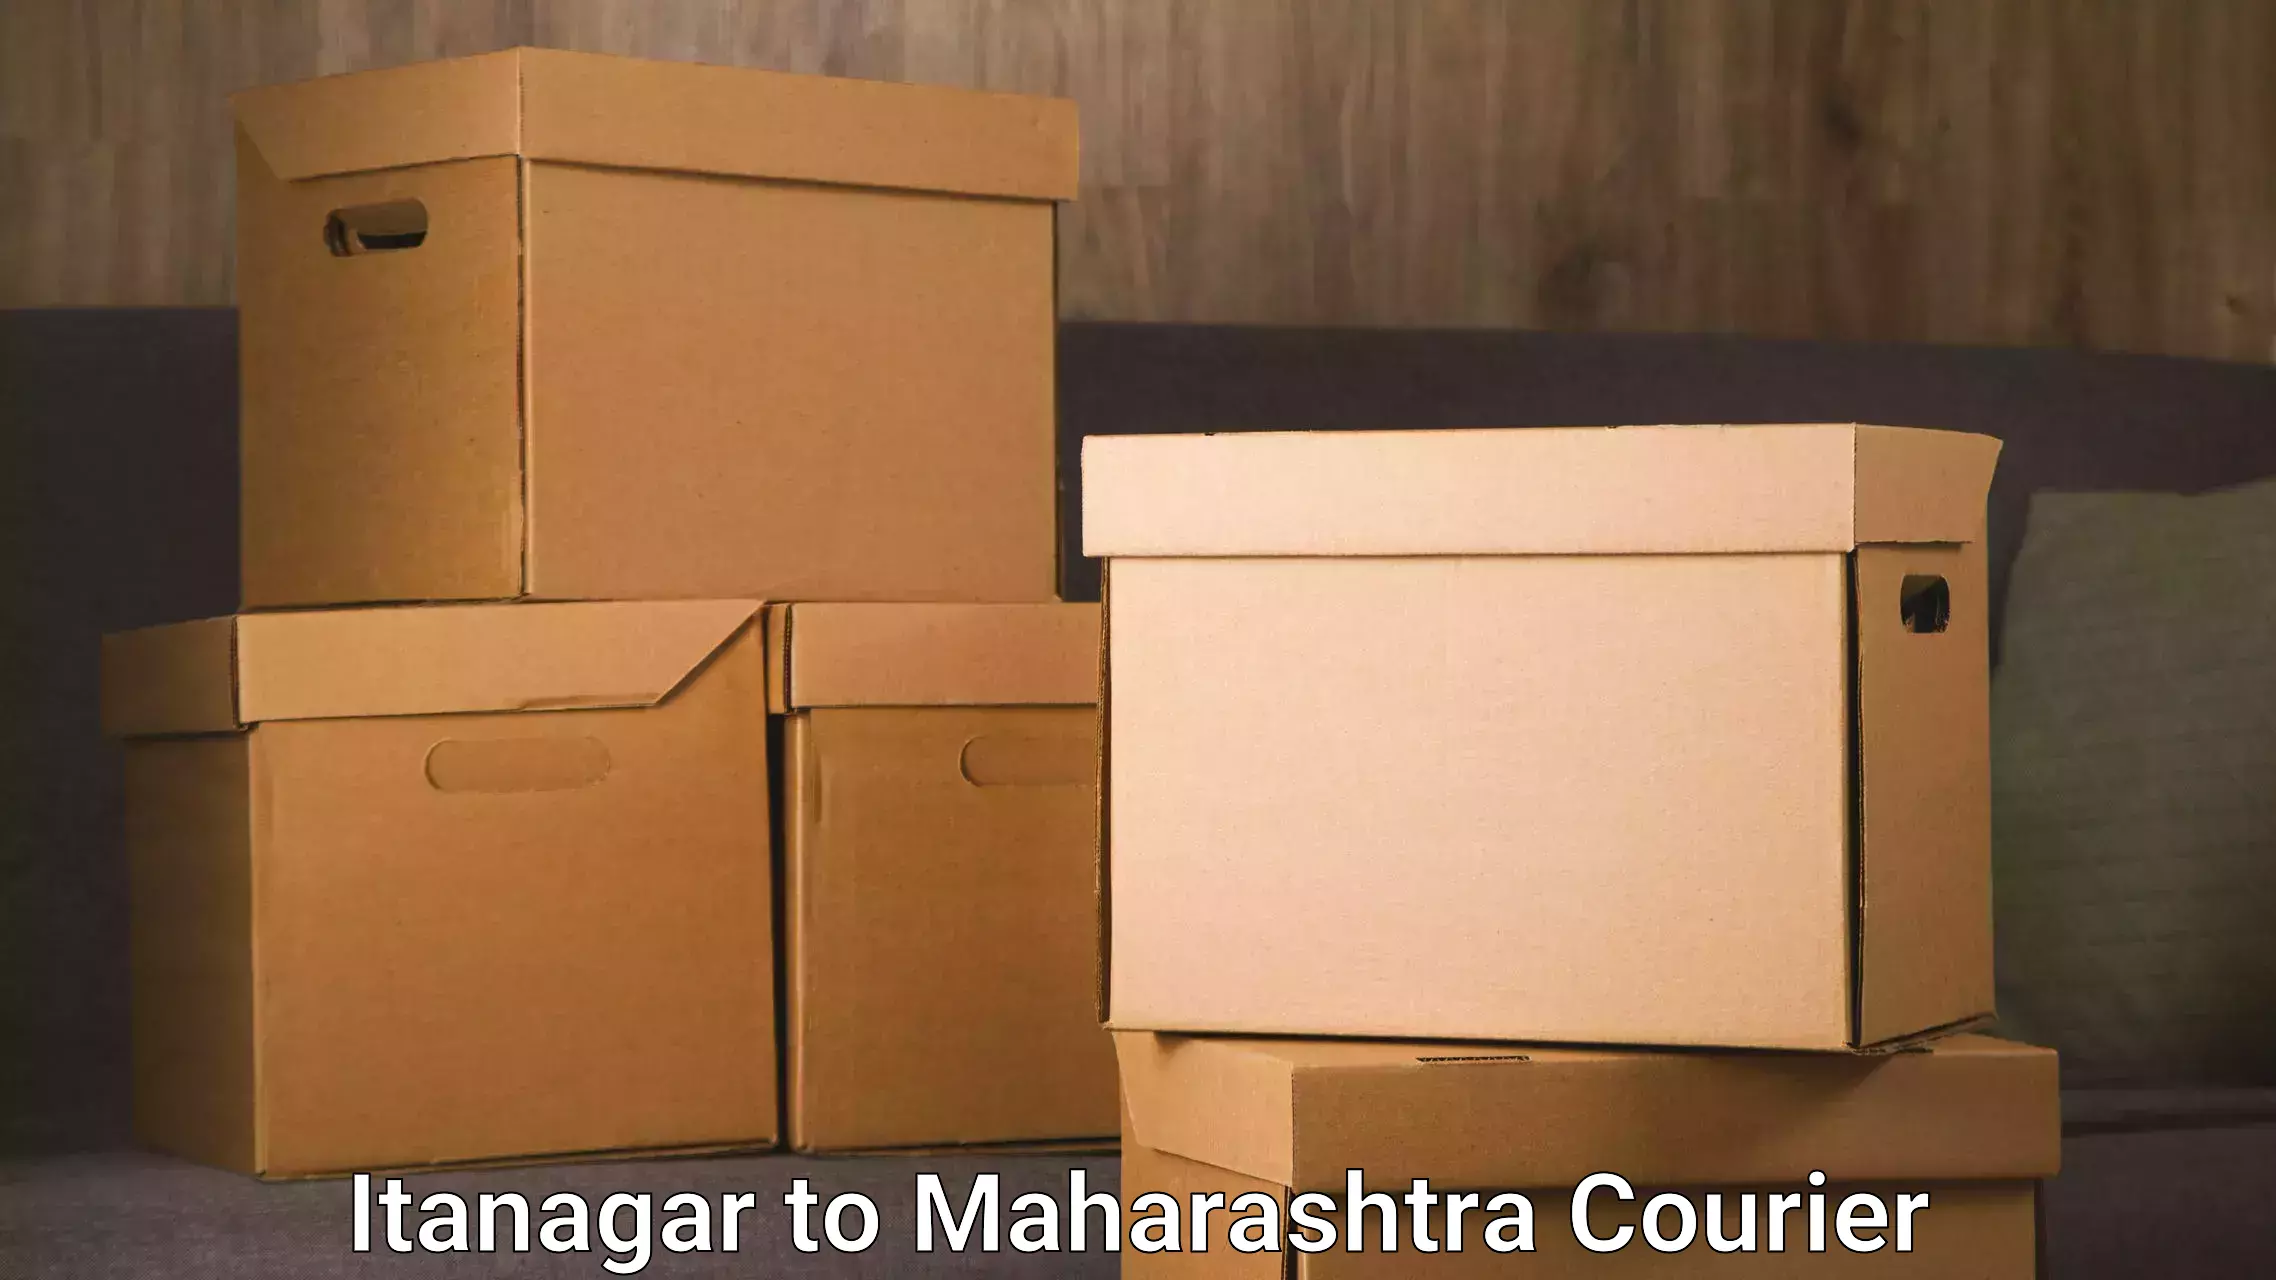 High-efficiency logistics Itanagar to Maharashtra